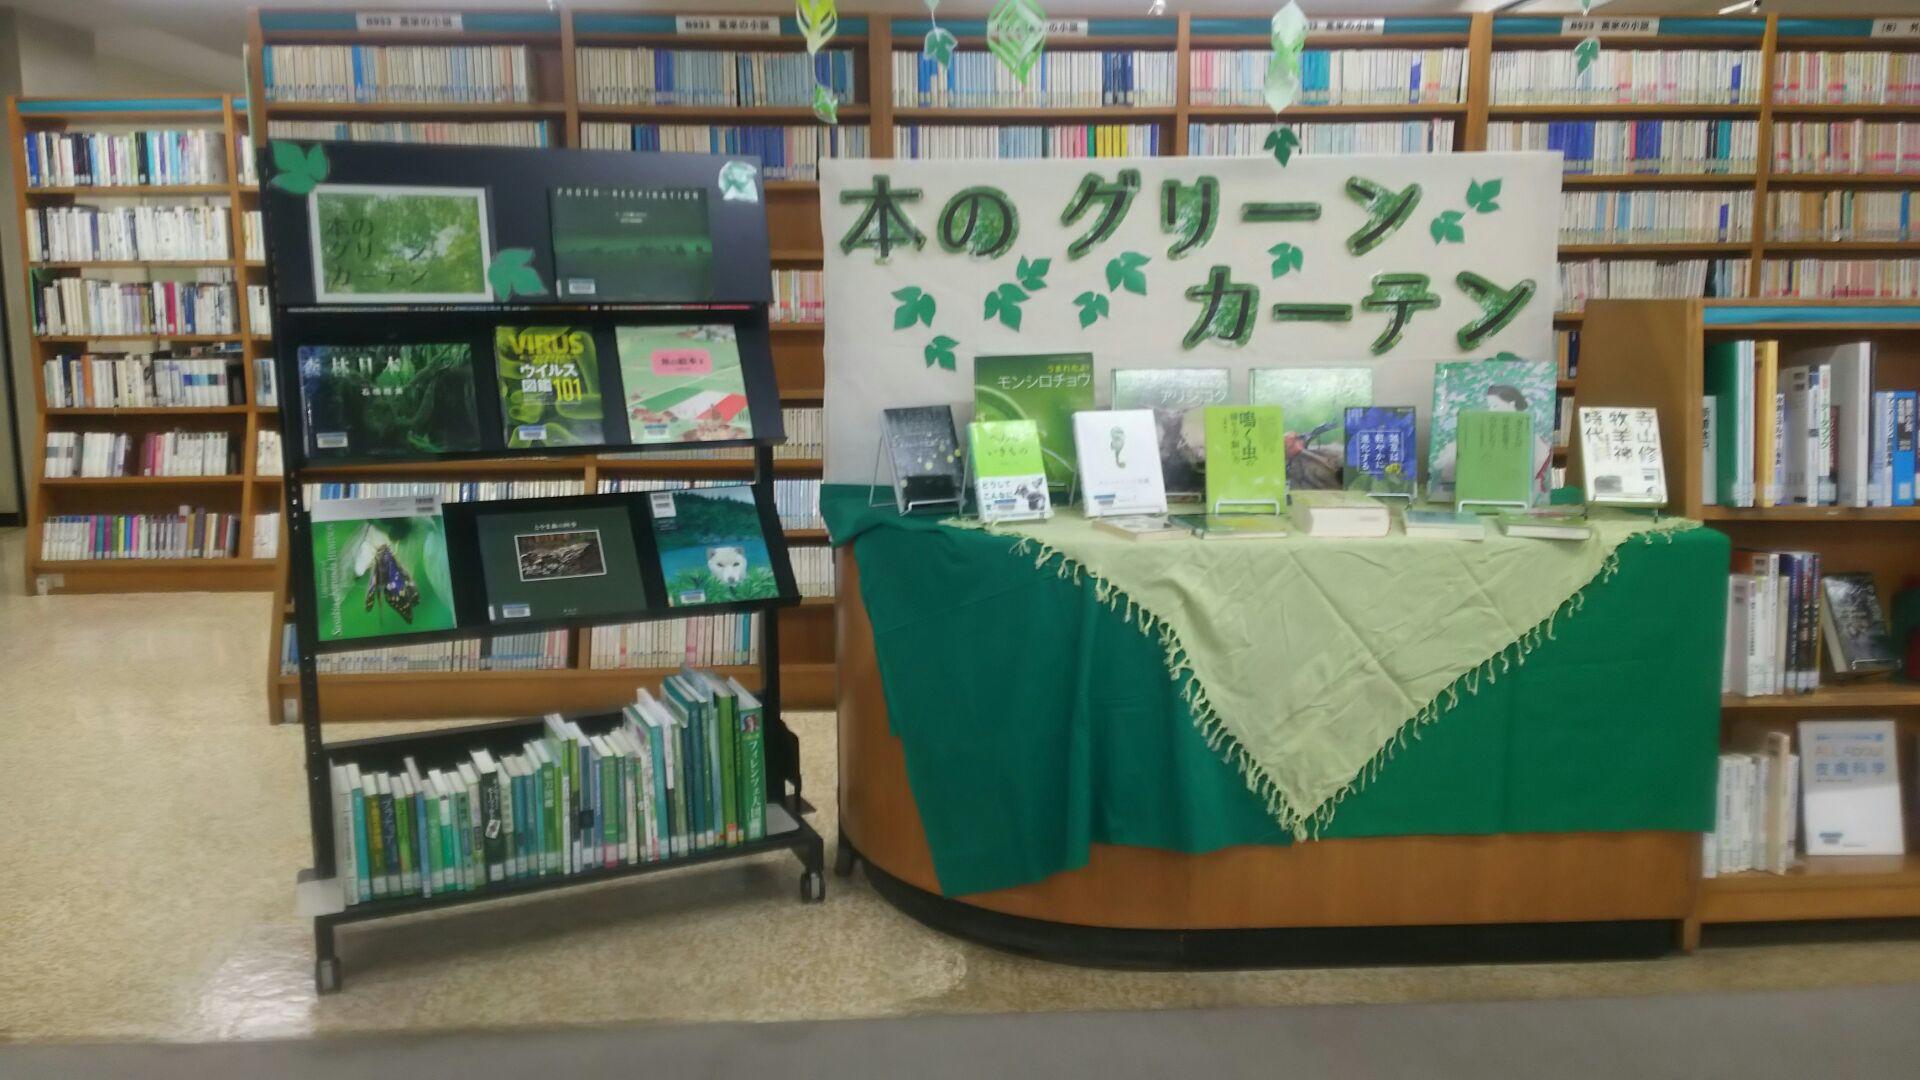 ミニ展示「本のグリーンカーテン」書架の写真